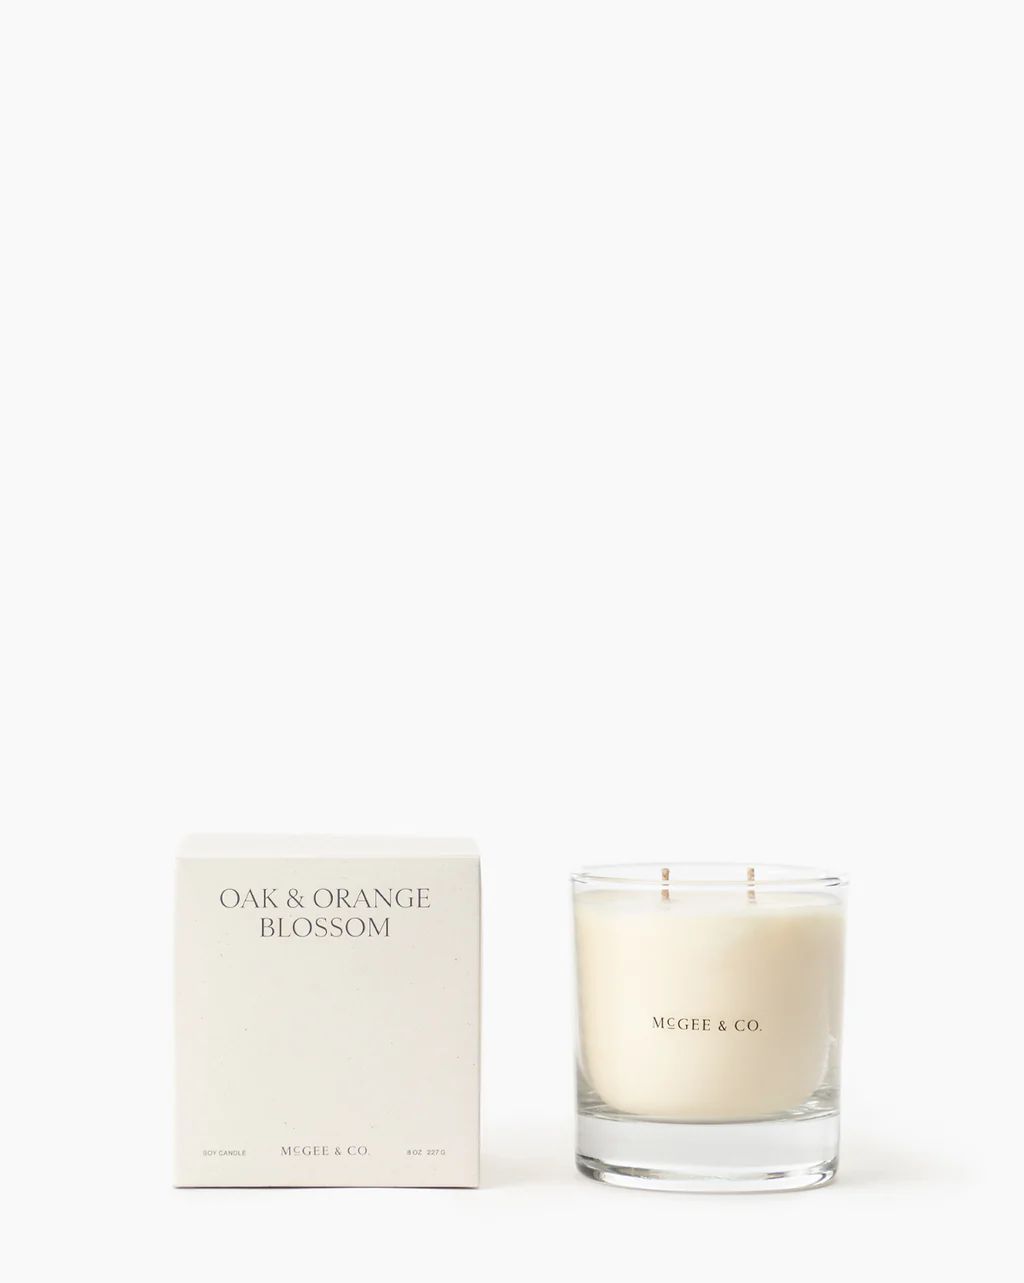 Oak & Orange Blossom Candle | McGee & Co.